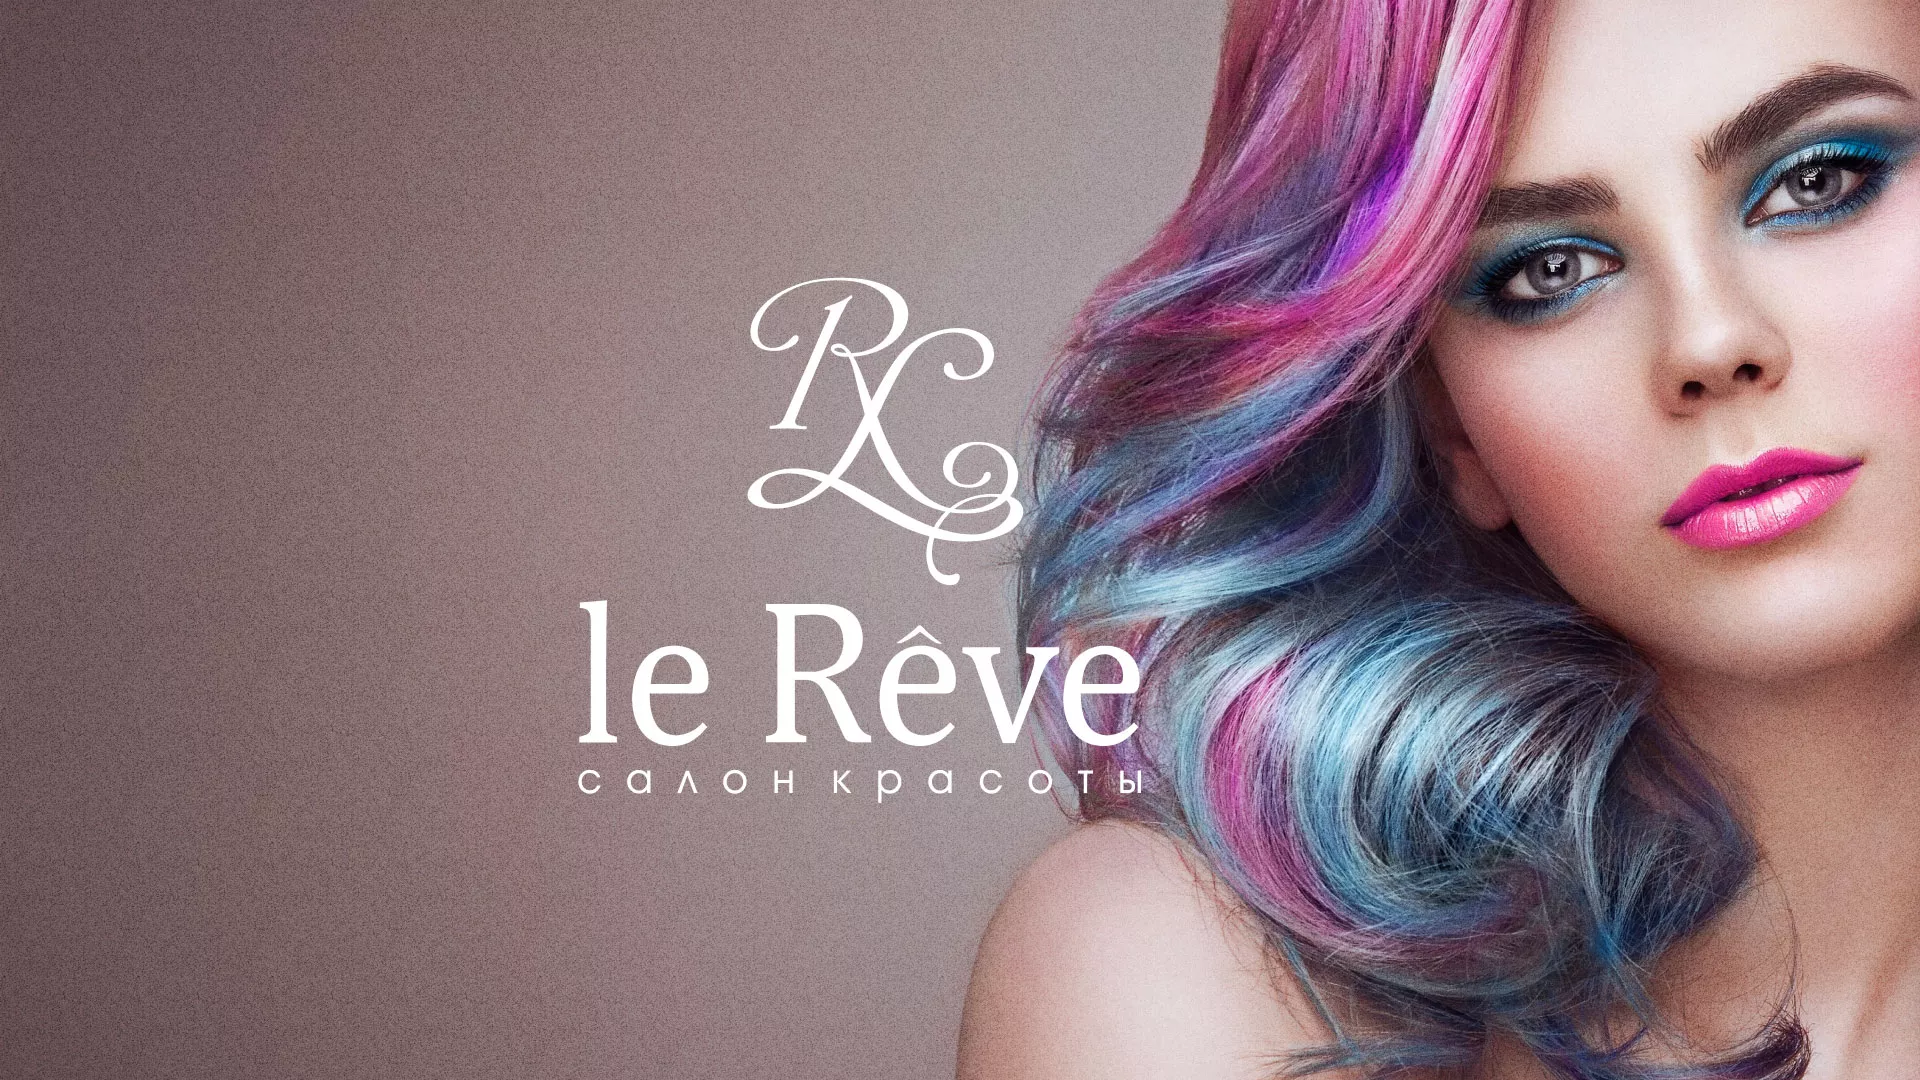 Создание сайта для салона красоты «Le Reve» в Бугуруслане